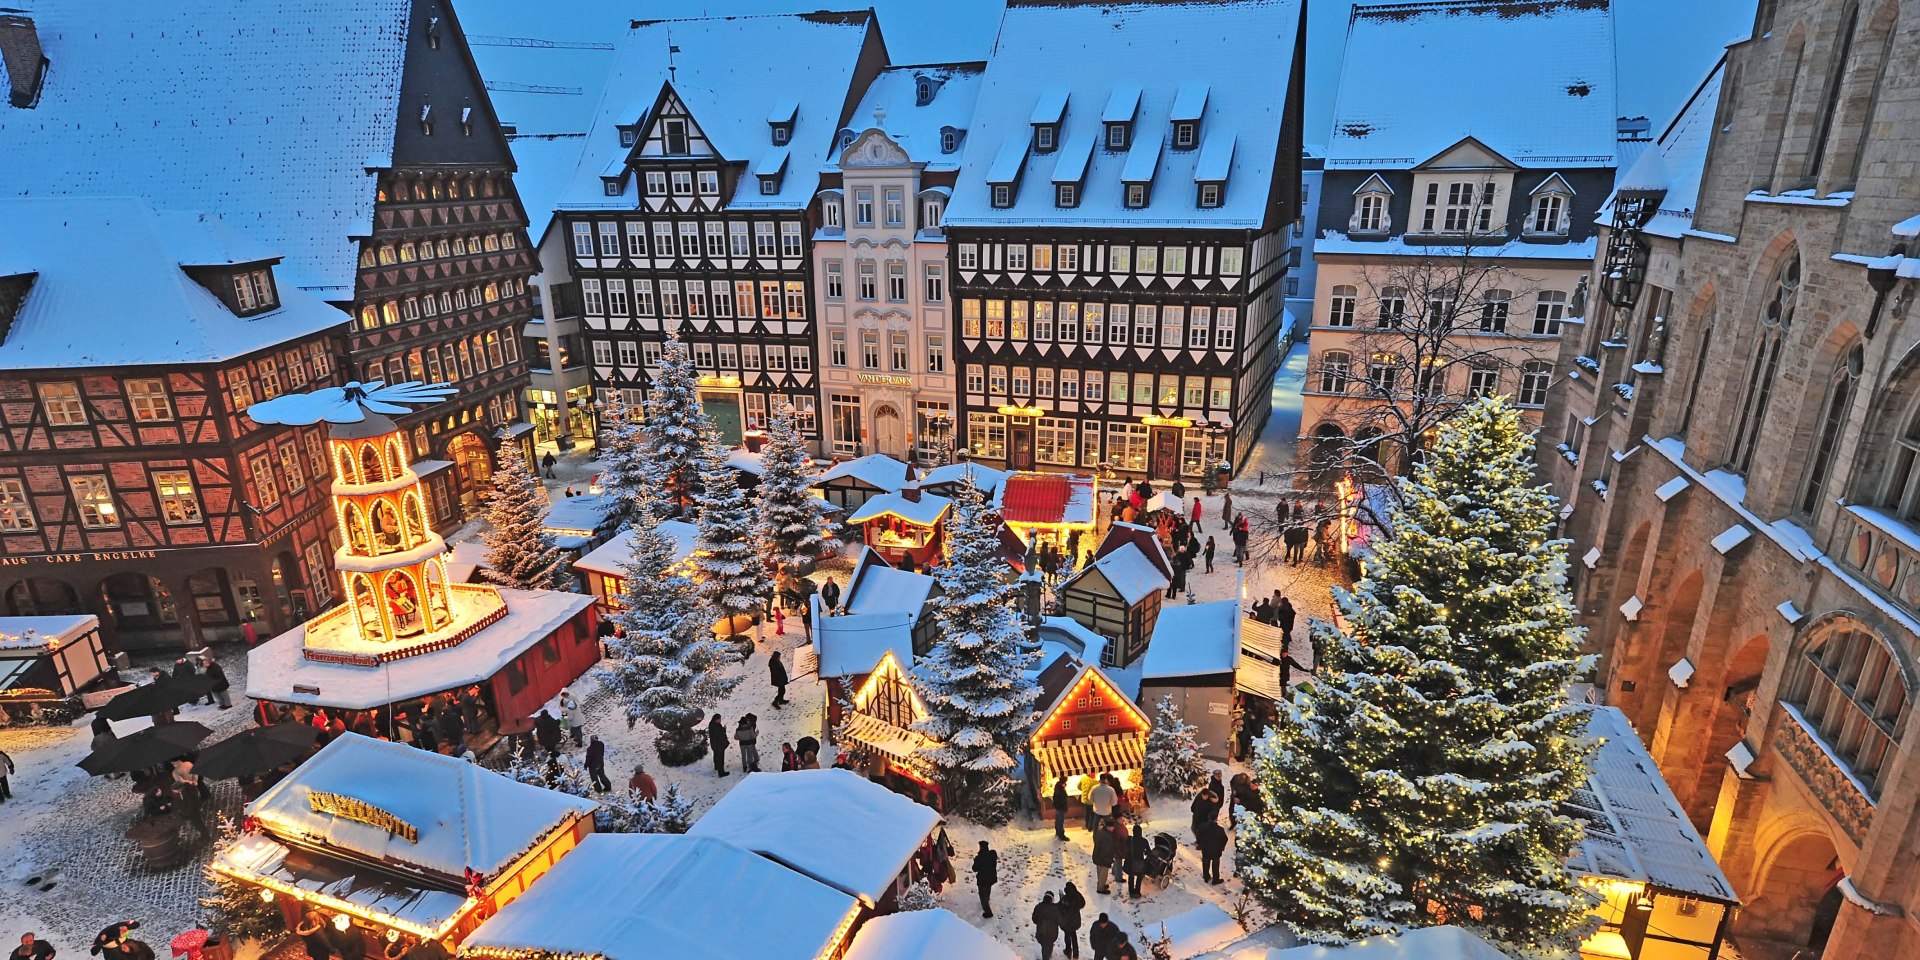 Christmas market Hildesheim, © Van der Valk Hotel / Hildesheim Marketing GmbH